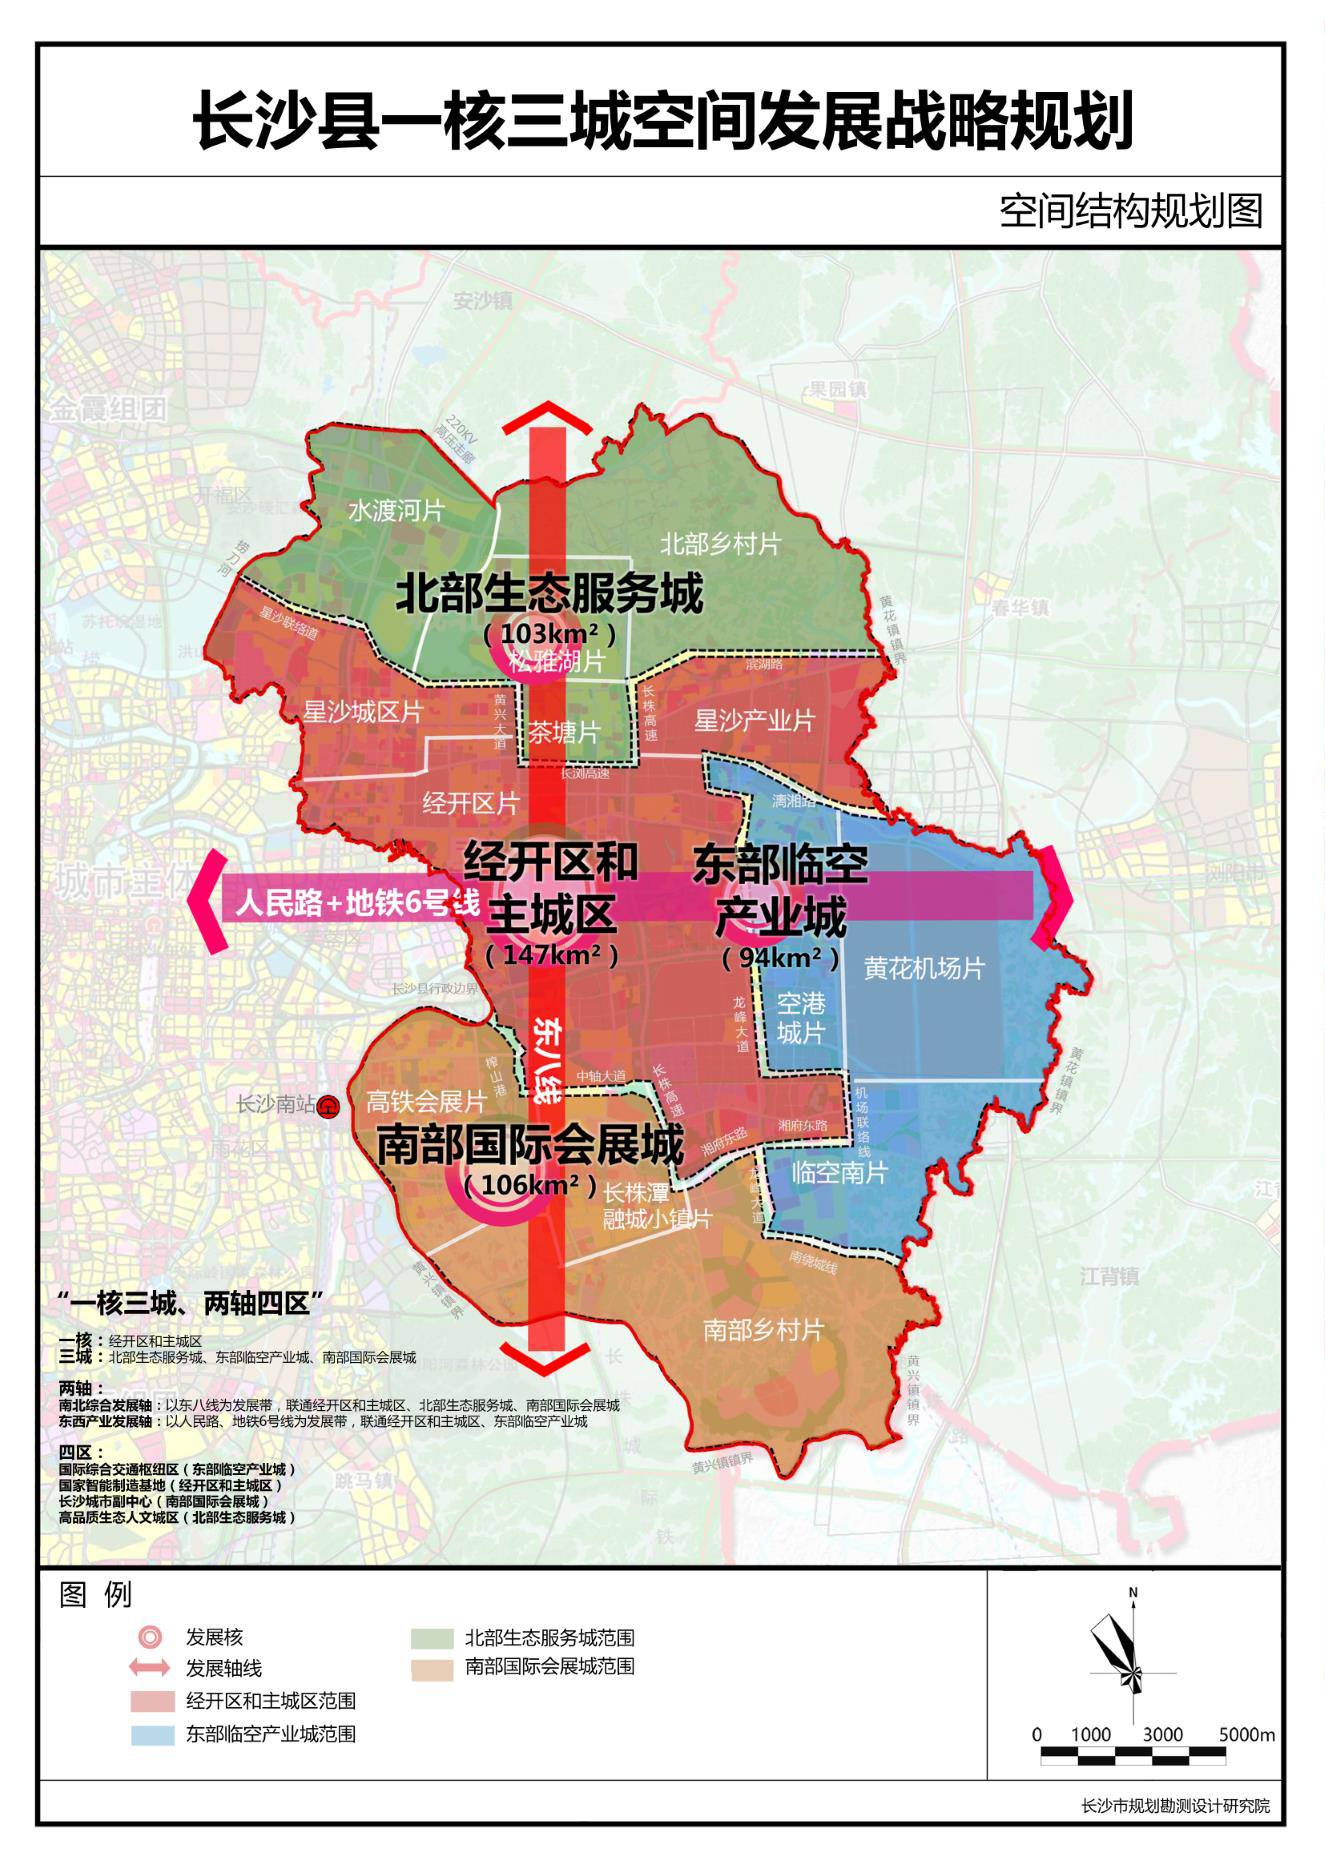 长沙投资环境北京推介会在京举行长沙县乘风借力深耕一核三城